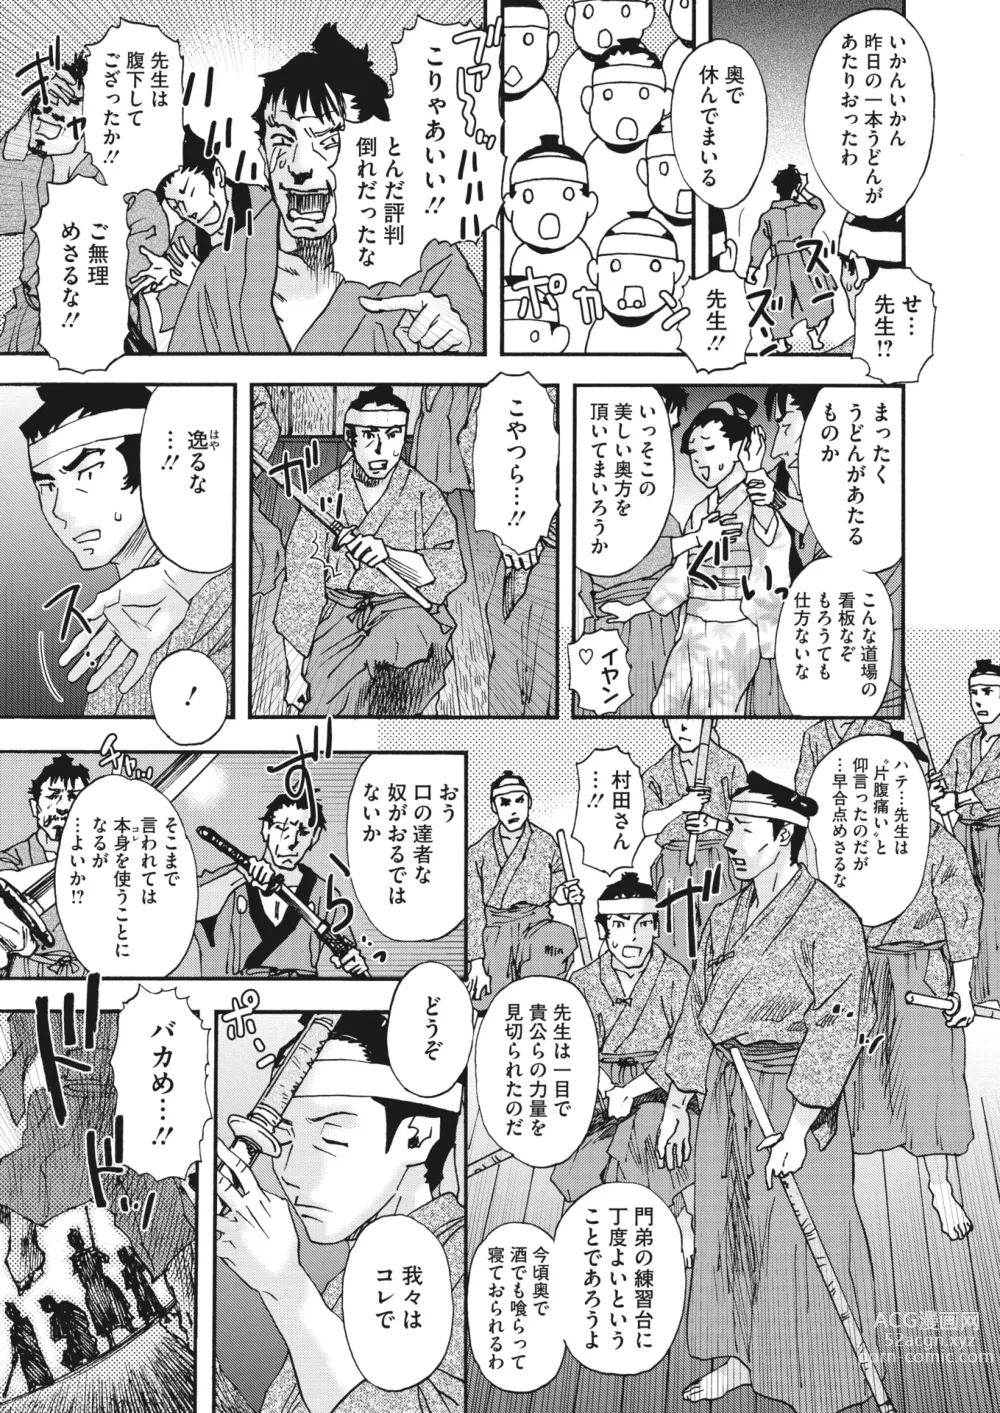 Page 304 of manga COMIC HOTMiLK Koime Vol. 41